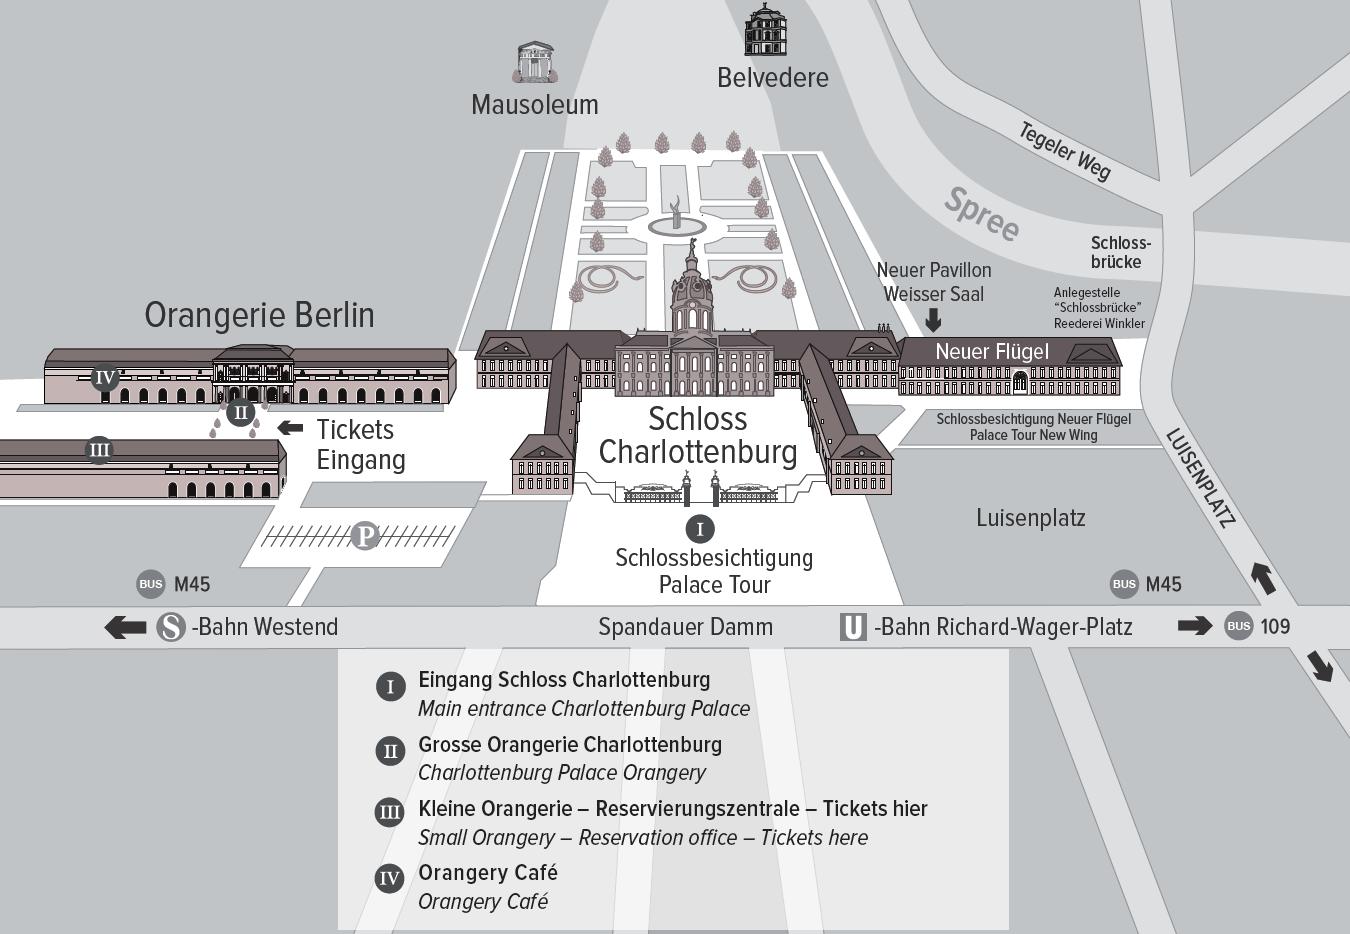 Brandenburg Bis zu 120 öffentliche Parkplätze vor den Toren der Orangerie Berlin und bis zu 80 Parkplätze, die Sie